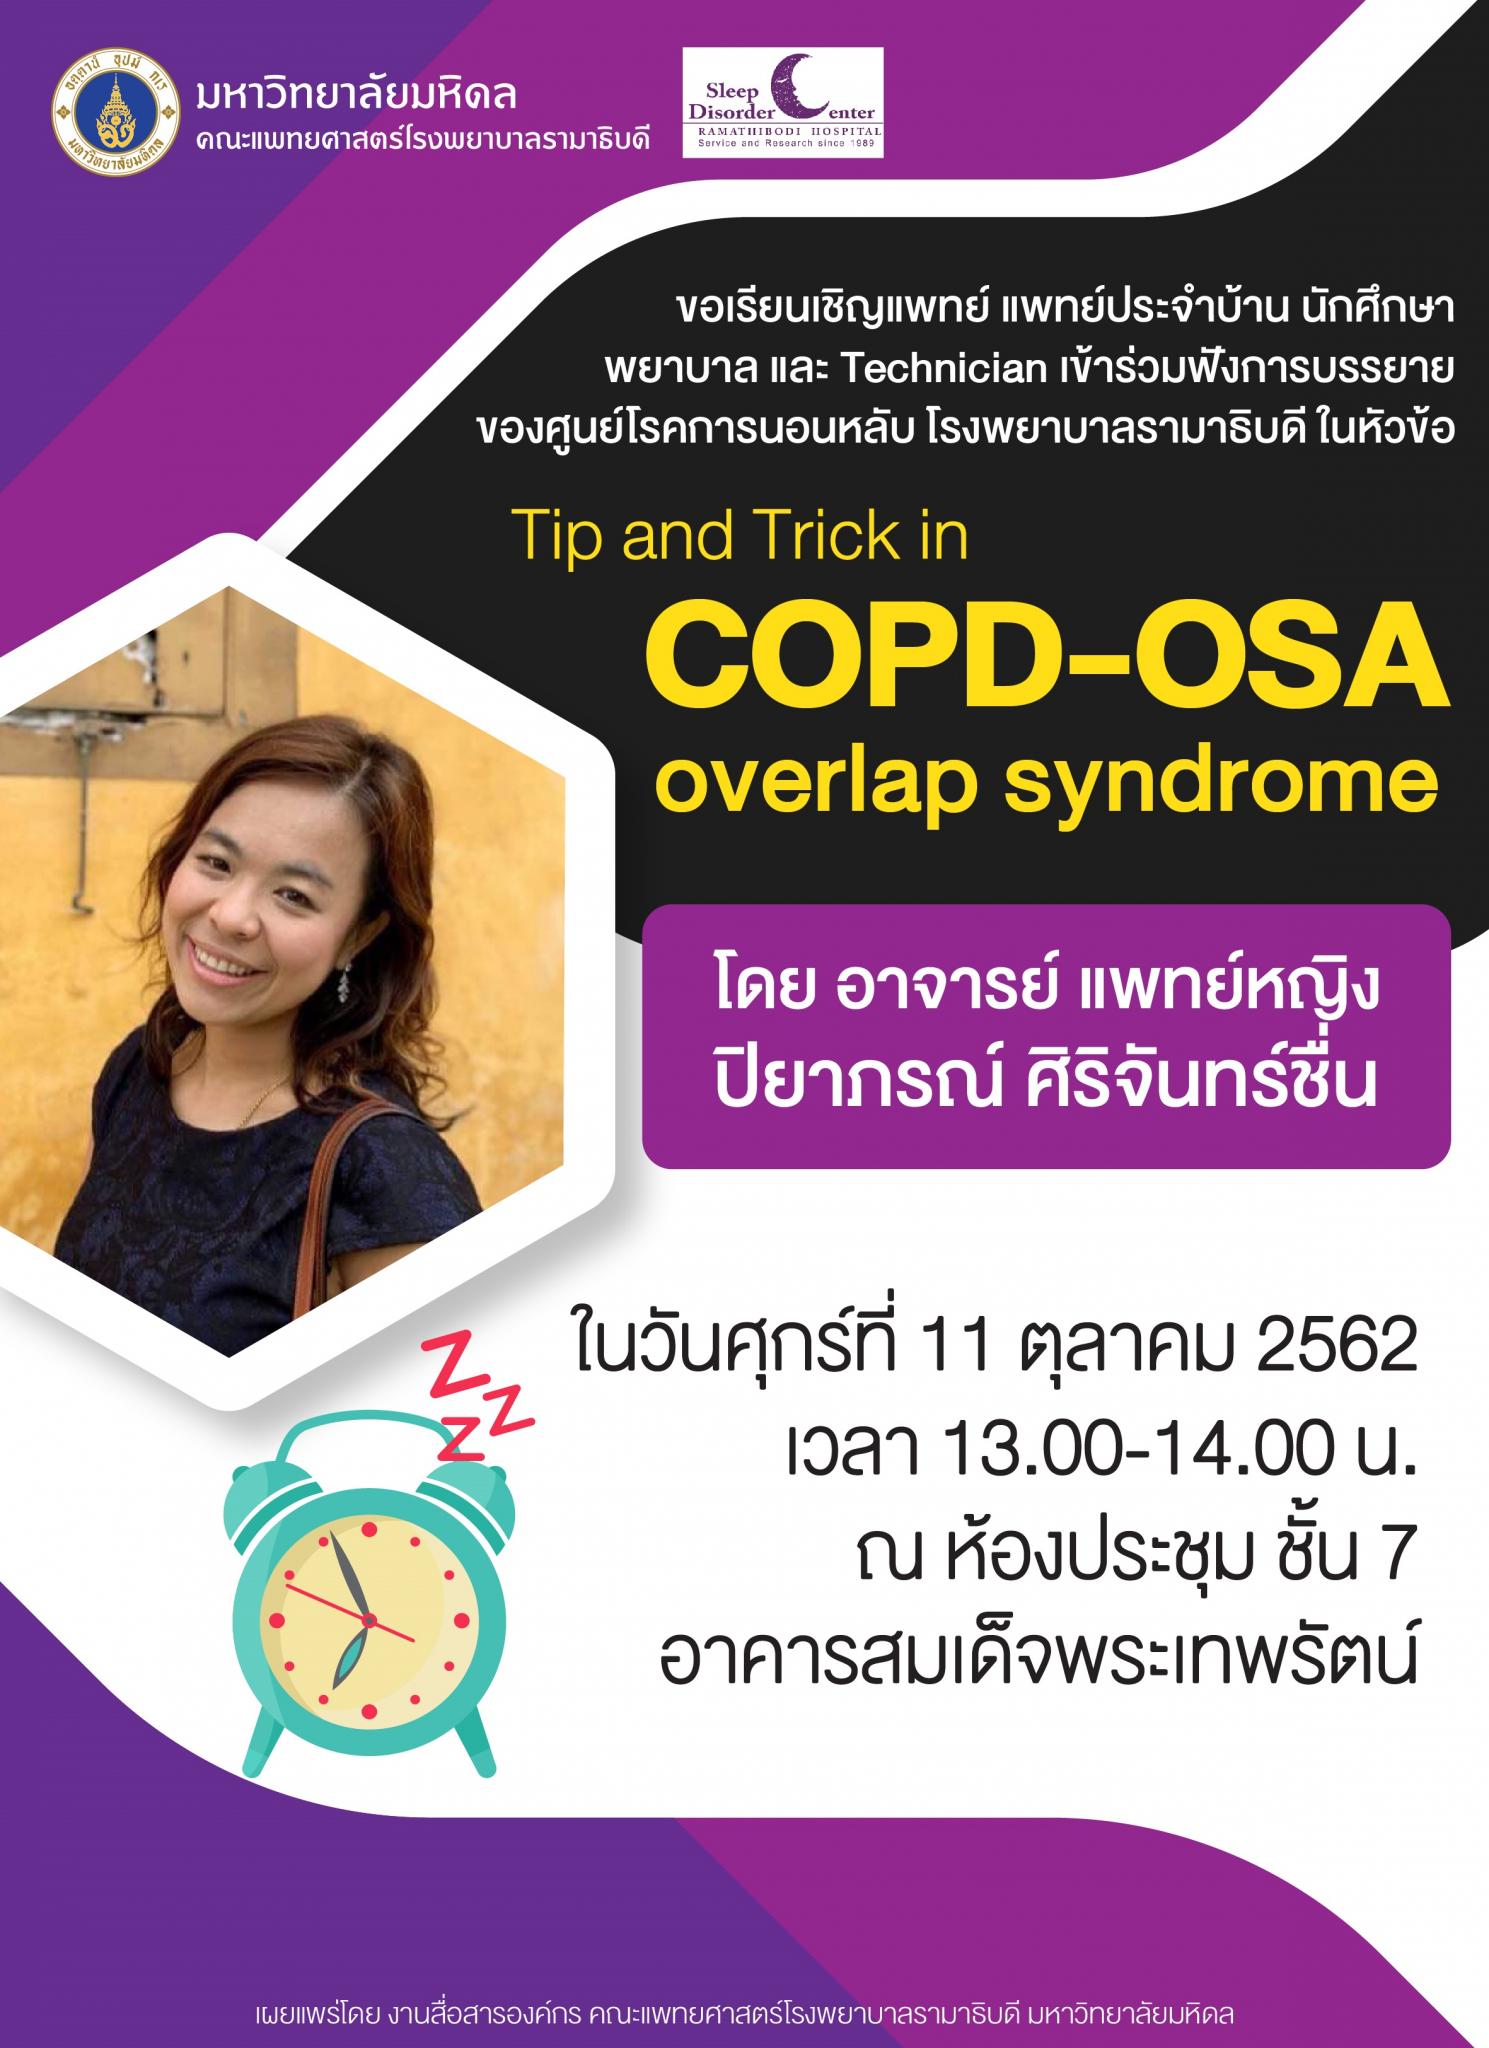 ขอเชิญเข้าร่วมฟังการบรรยายในหัวข้อ Tip and Trick in COPD-OSA overlap syndrome